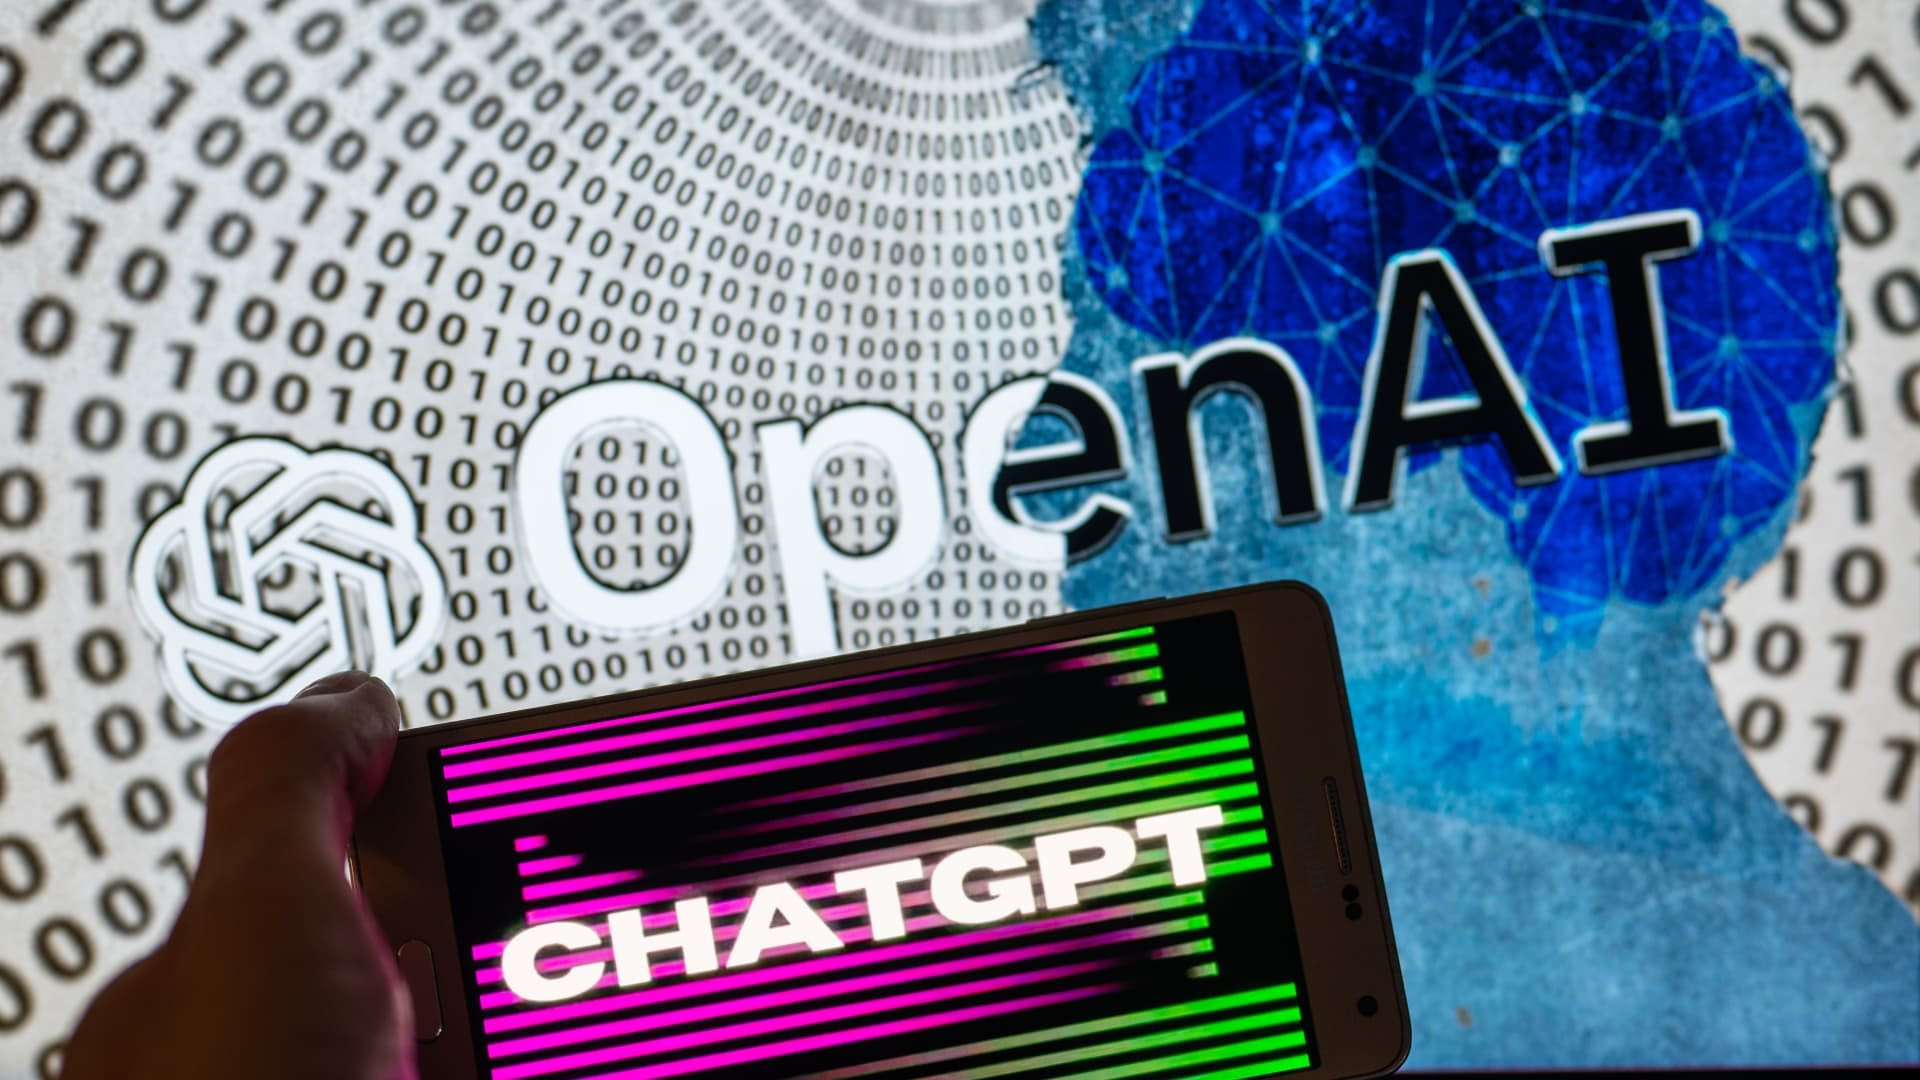 OpenAI bắt đầu kiếm tiền từ ChatGPT, tung ra gói ChatGPT Plus giúp người trả phí được ưu tiên truy cập chatbot AI